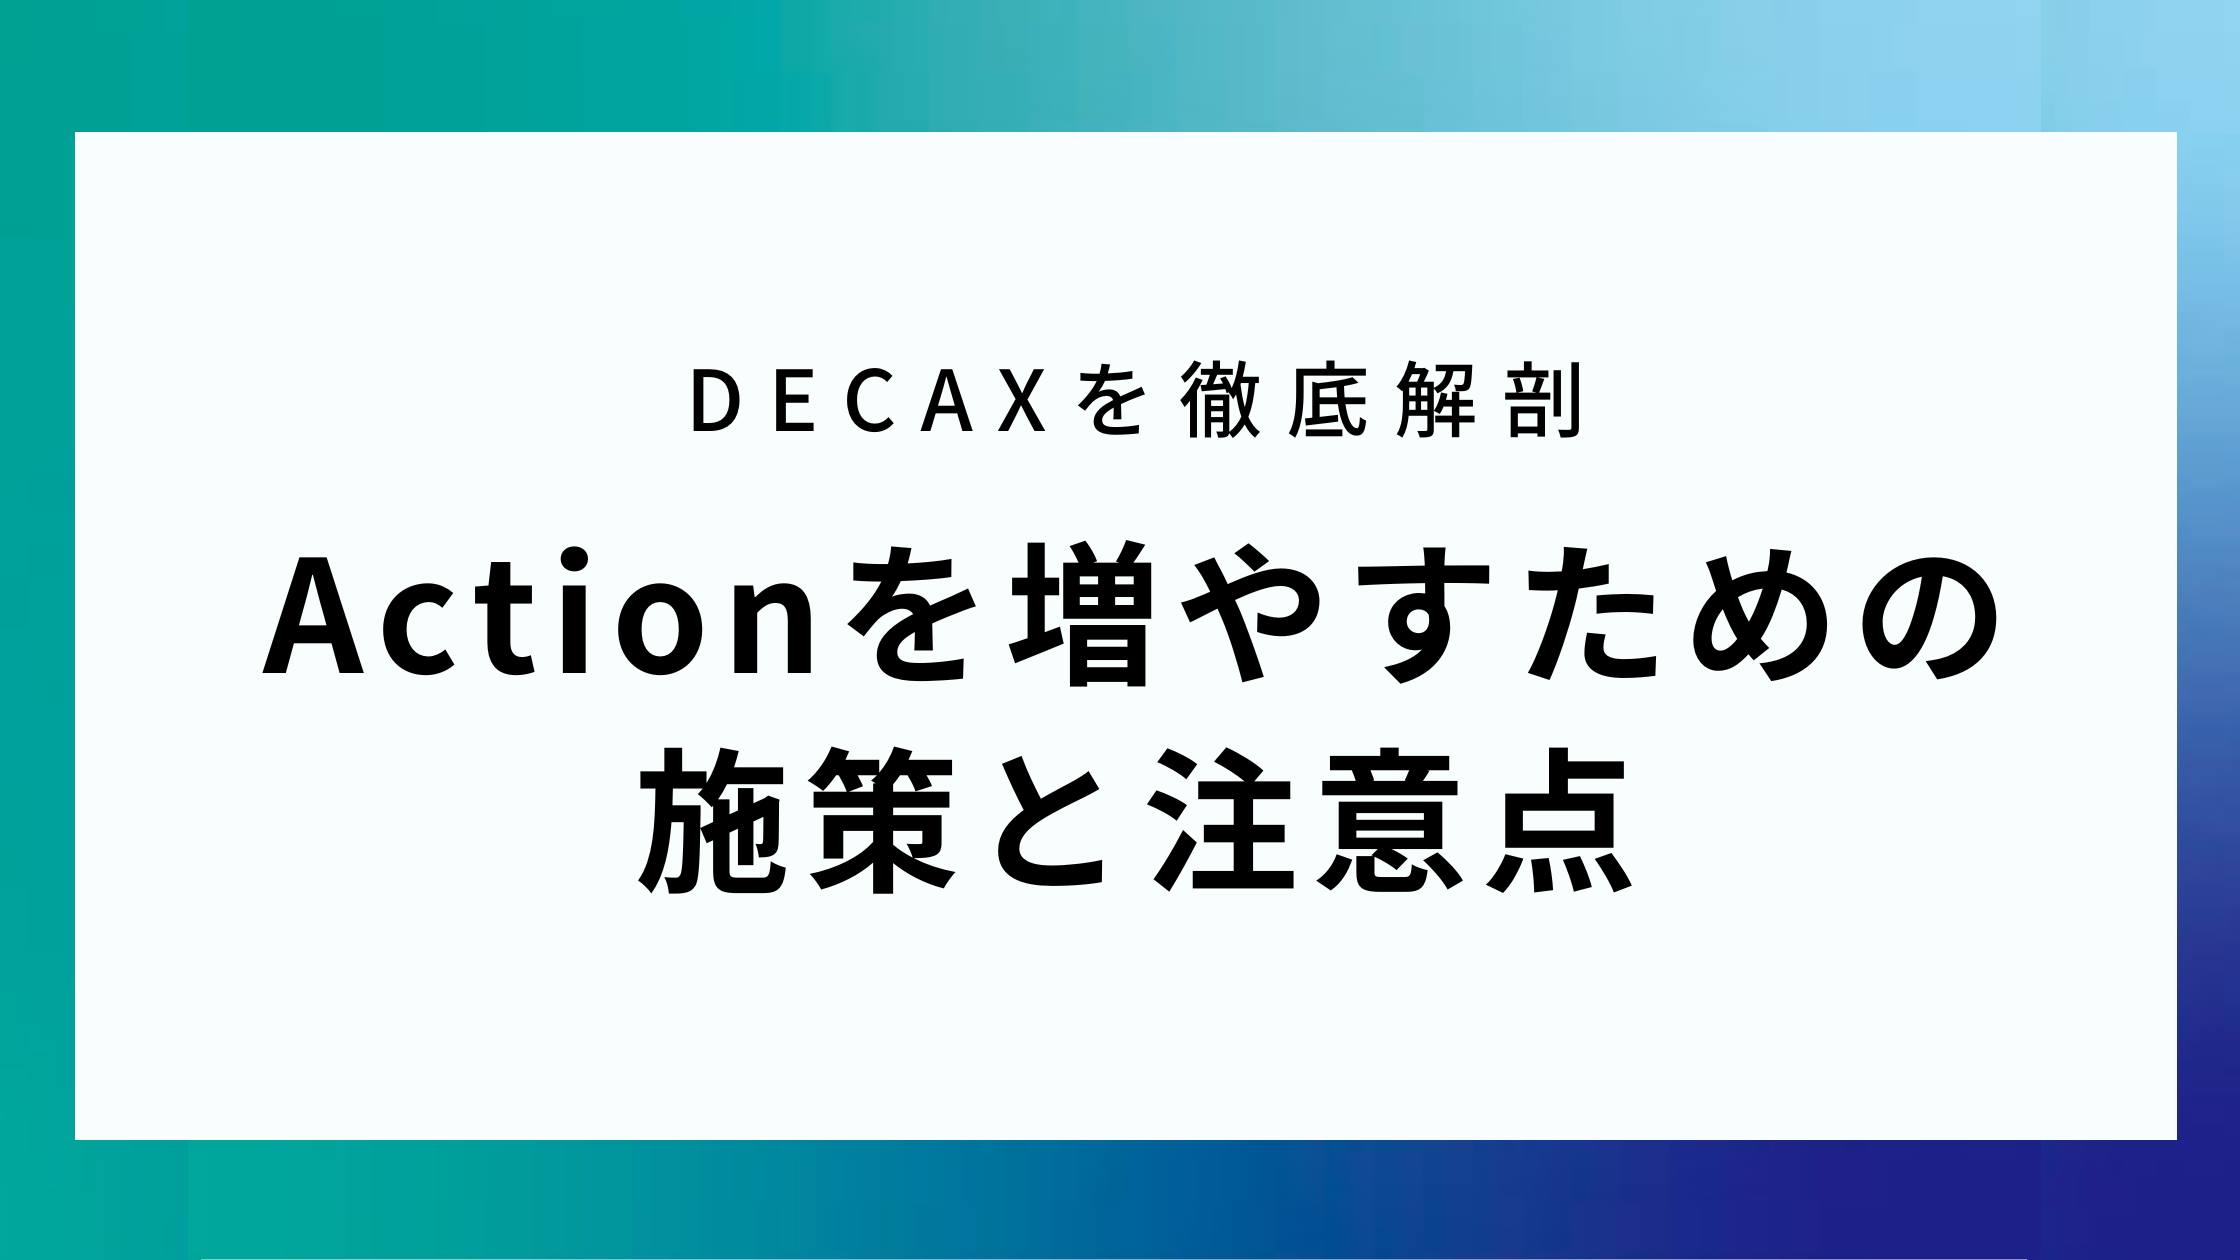 DECAXを徹底解剖 Actionを増やすための施策と注意点